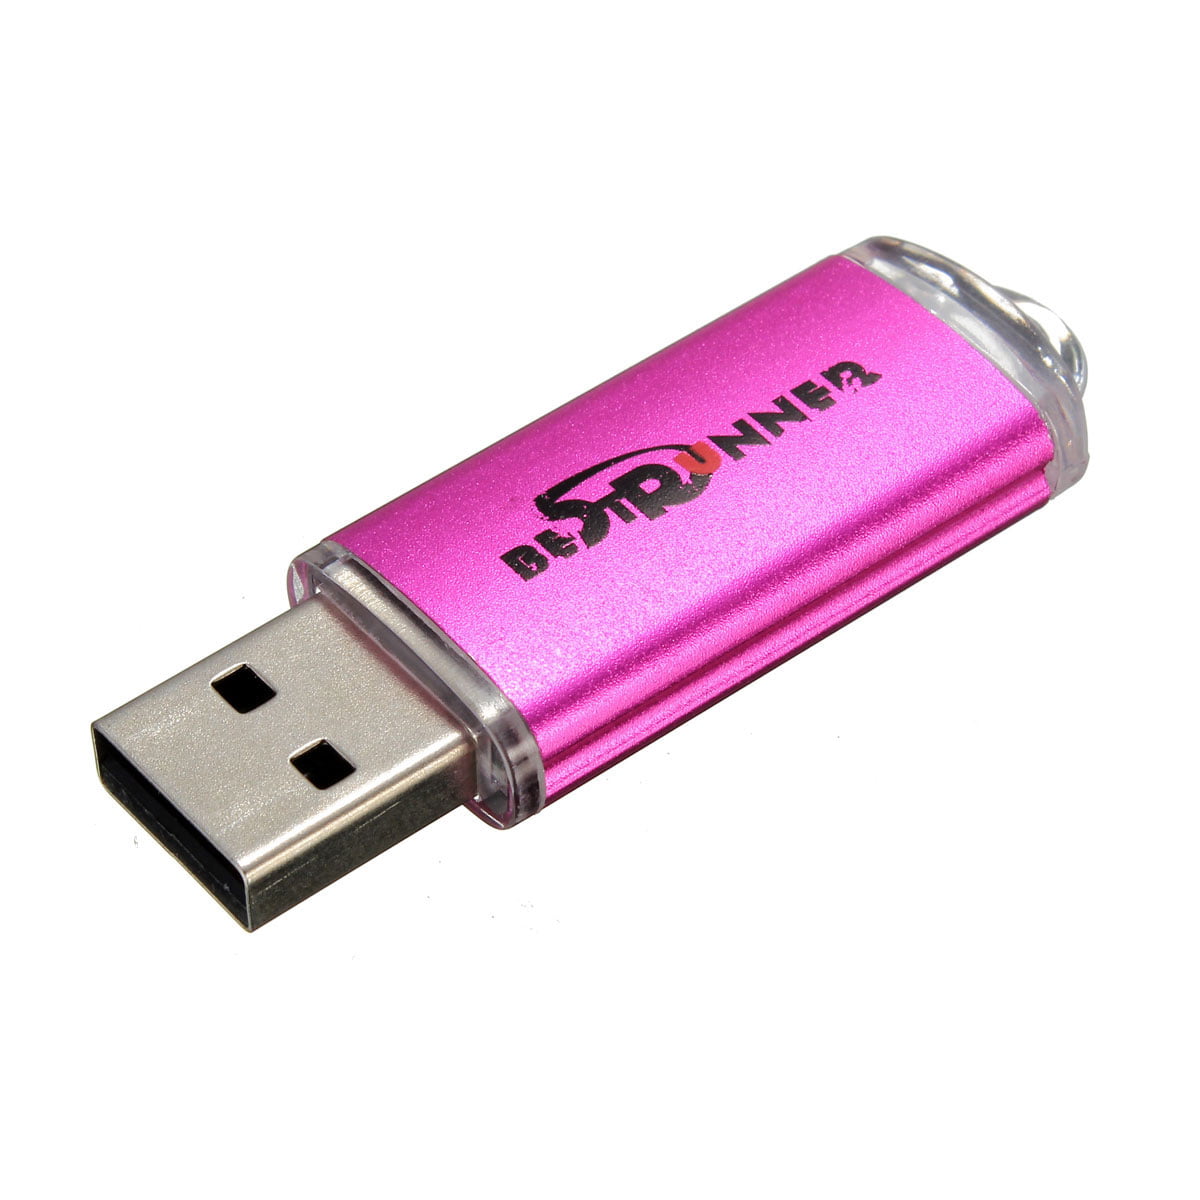 Black Flash Drive USB 2.0 USB Flash Drive 4Gb 8Gb Pen Drive USB 2.0 USB Stick Leather USB Memory USB Drive Memory Stick U Disk Thumb Drive